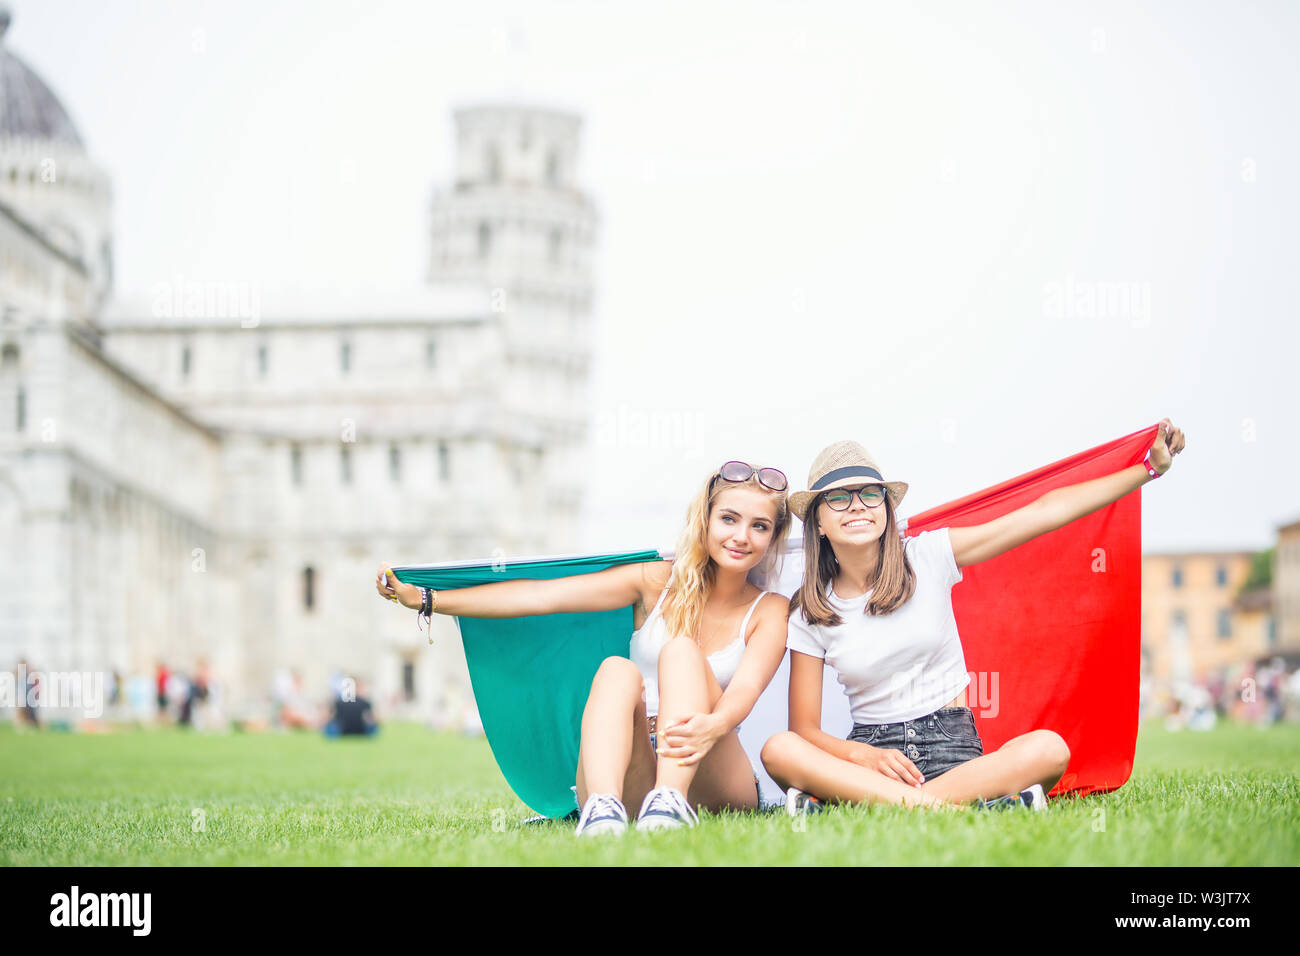 Las niñas adolescentes jóvenes viajeros con bandera italiana antes de la histórica torre en la ciudad de Pisa, Italia. Foto de stock